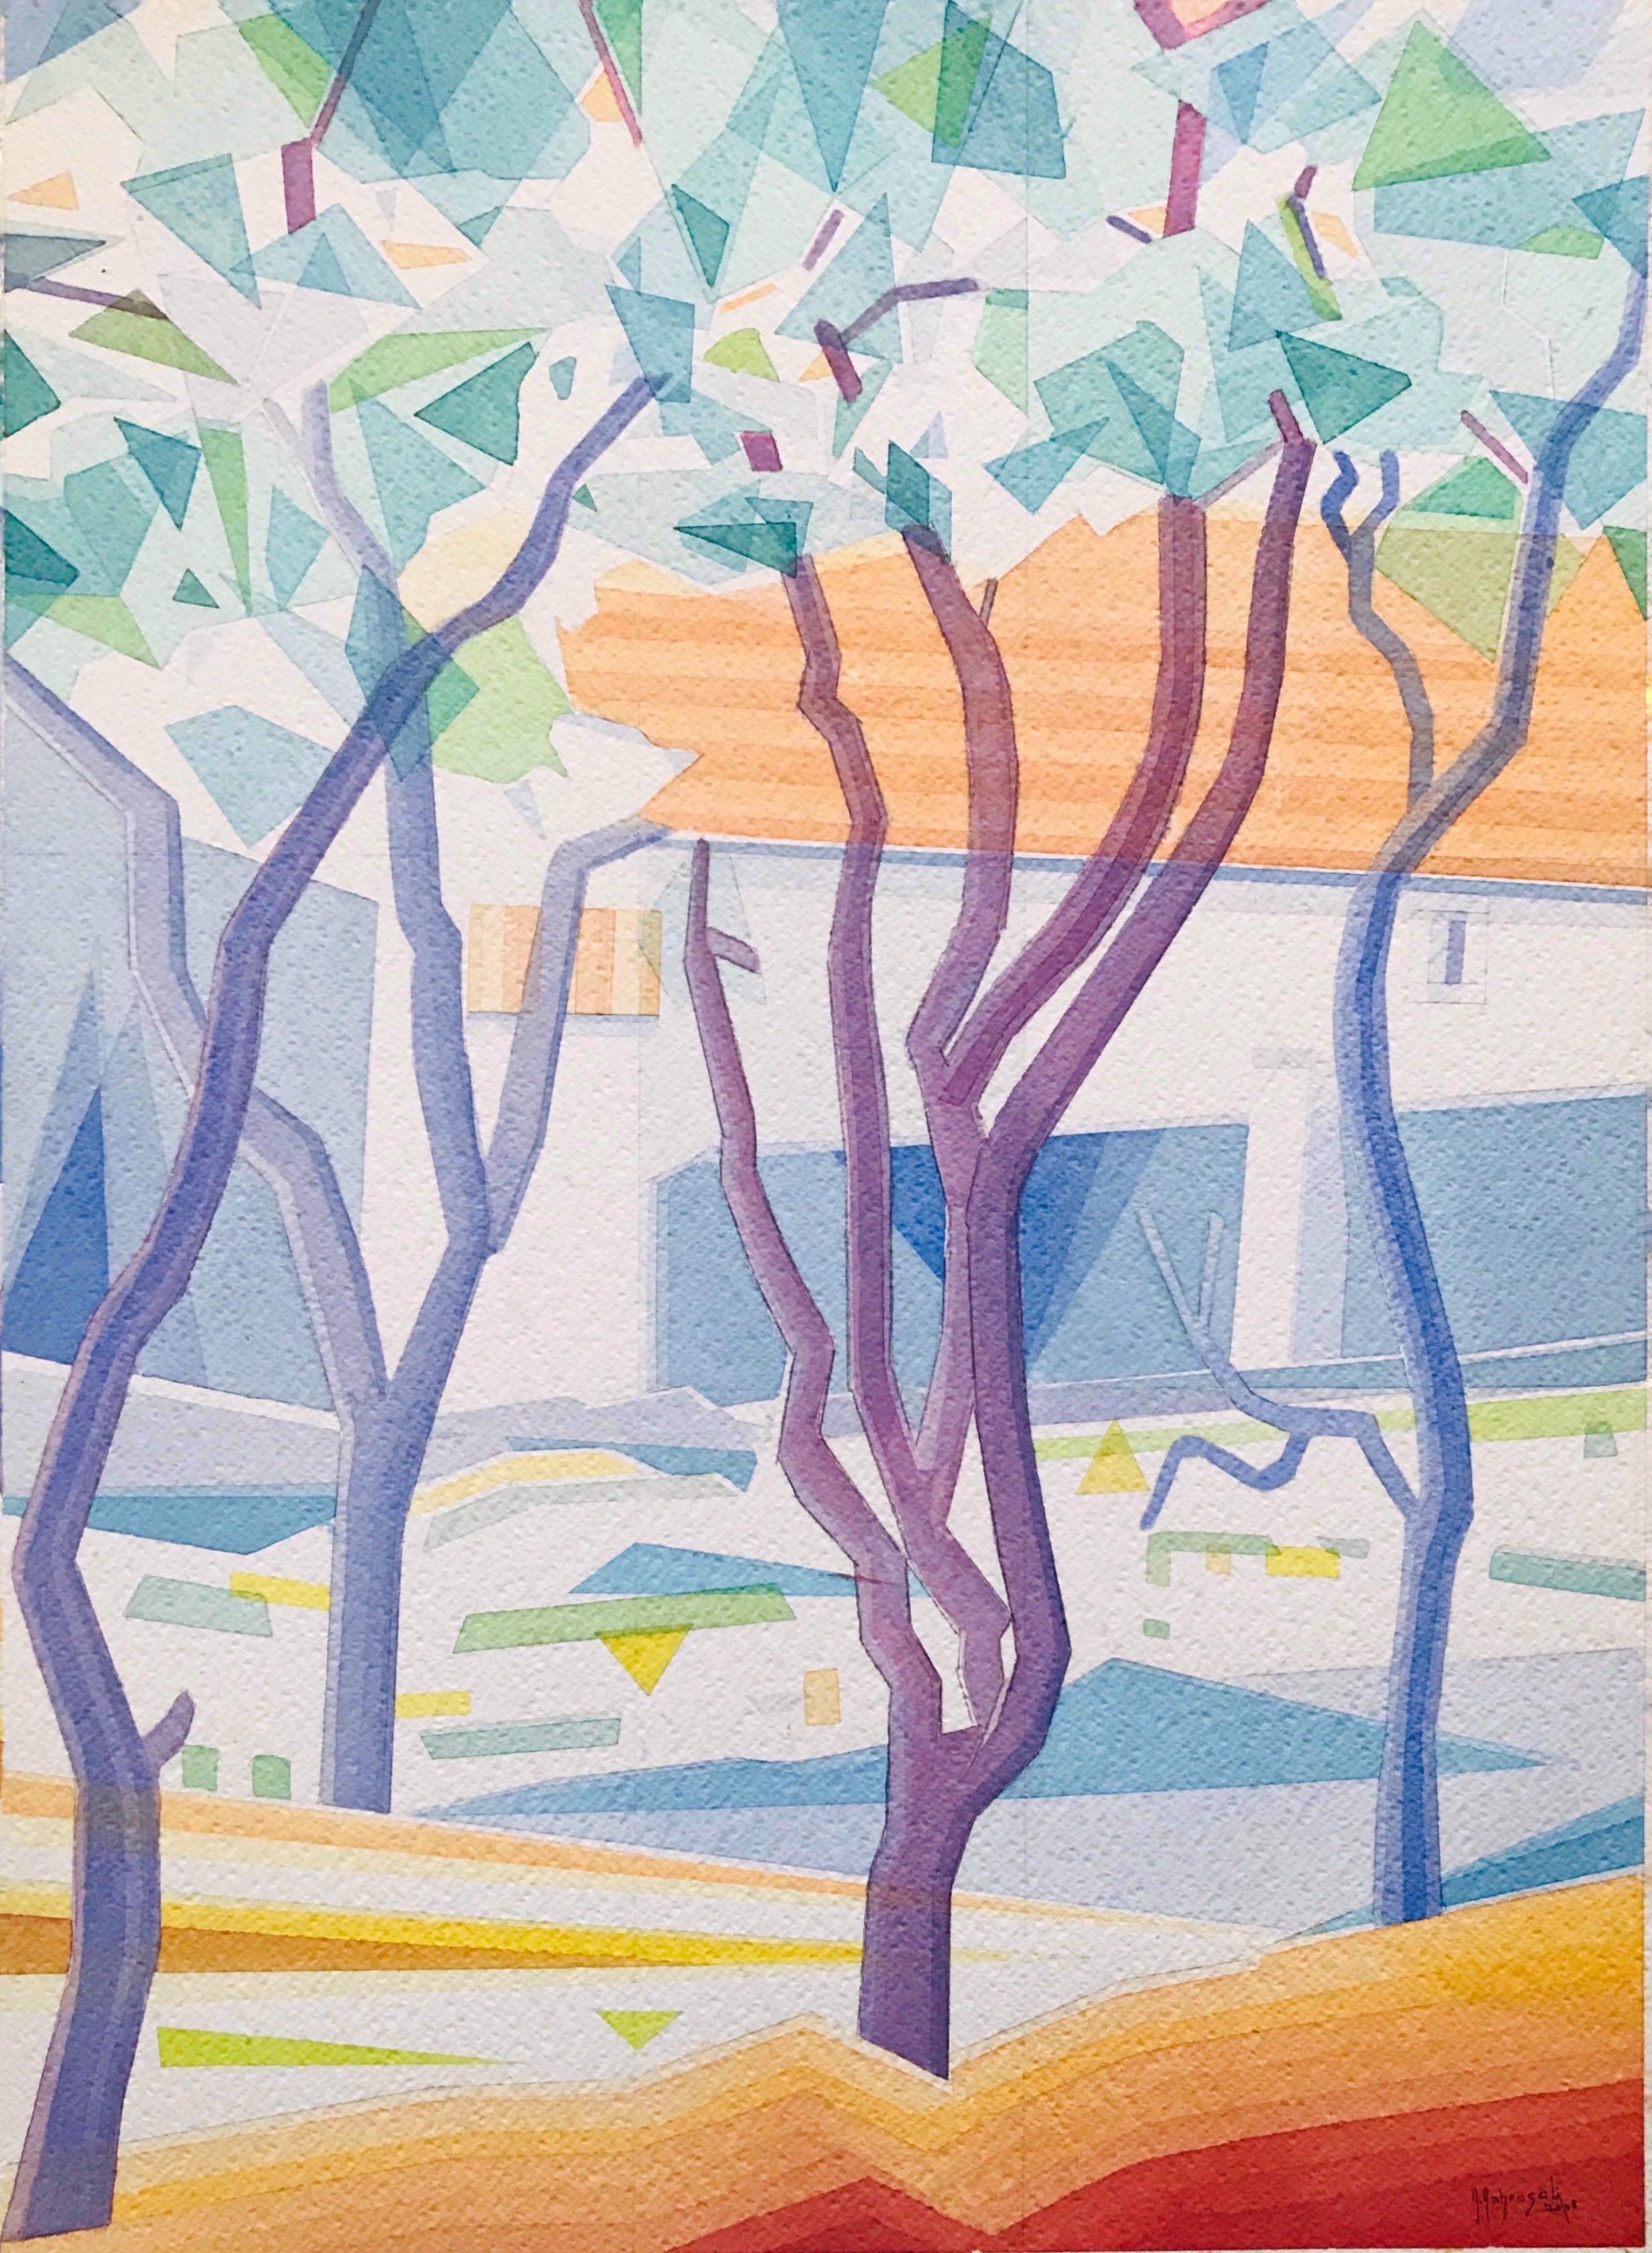 Plum Blossom Trees - Spring ist ein Aquarell der zeitgenössischen Künstlerin Annemarie Ambrosoli, gemalt auf 600 g/m² Fabriano-Karton, 58 x 42 cm groß.
Oberfläche des Kartons: grobe Körnung.
Das Bild ist Teil einer Serie von Aquarellen, die zwischen